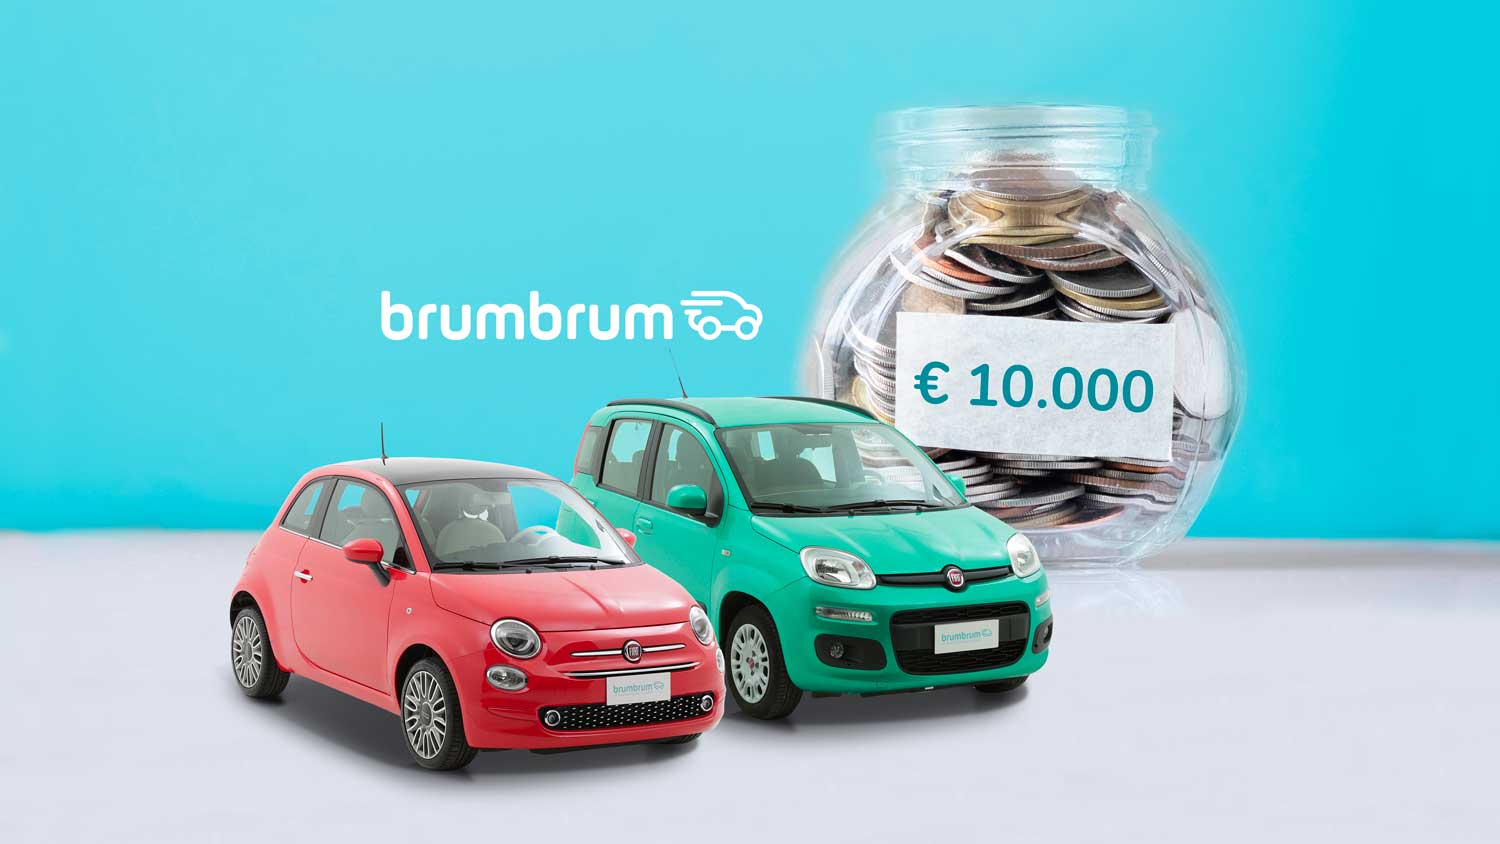 Le auto usate sotto i 10.000 euro più vendute online